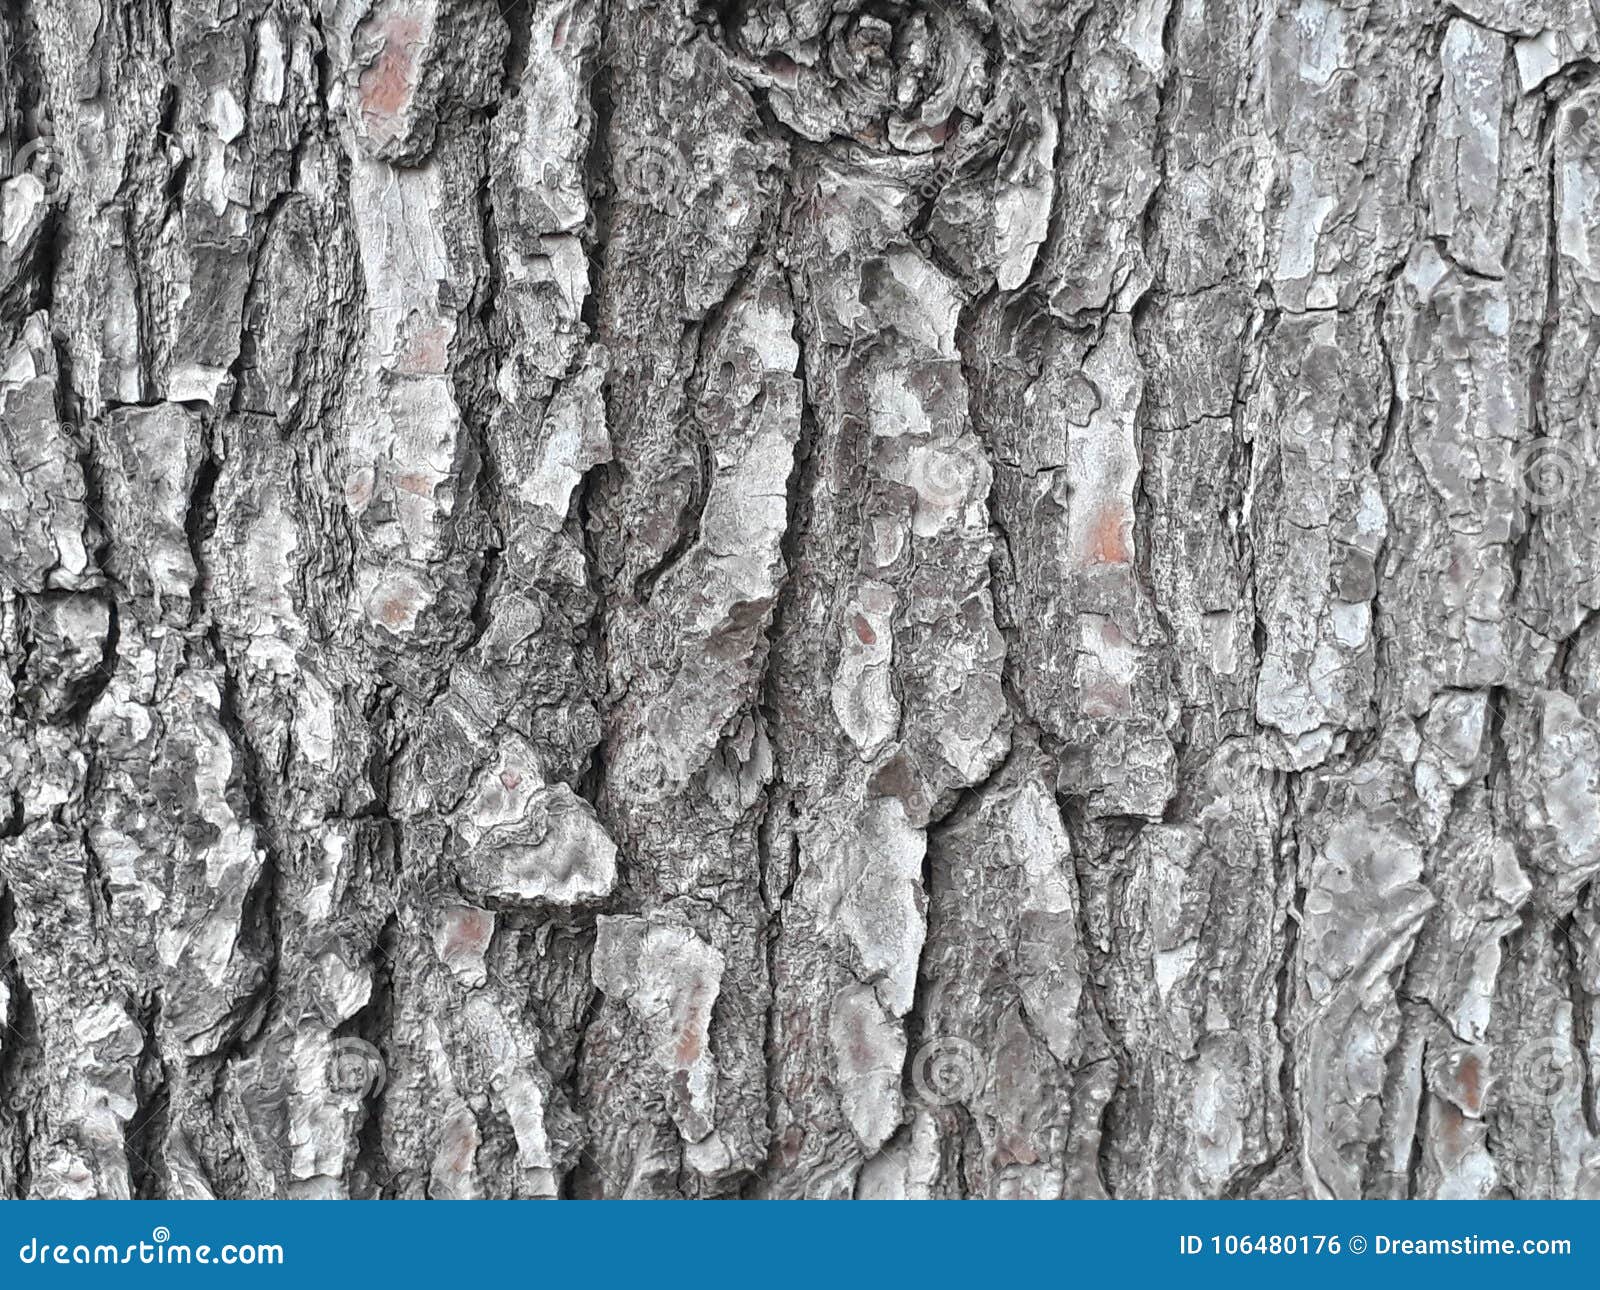 textura de corteza de un arbol / bark texture of a tree